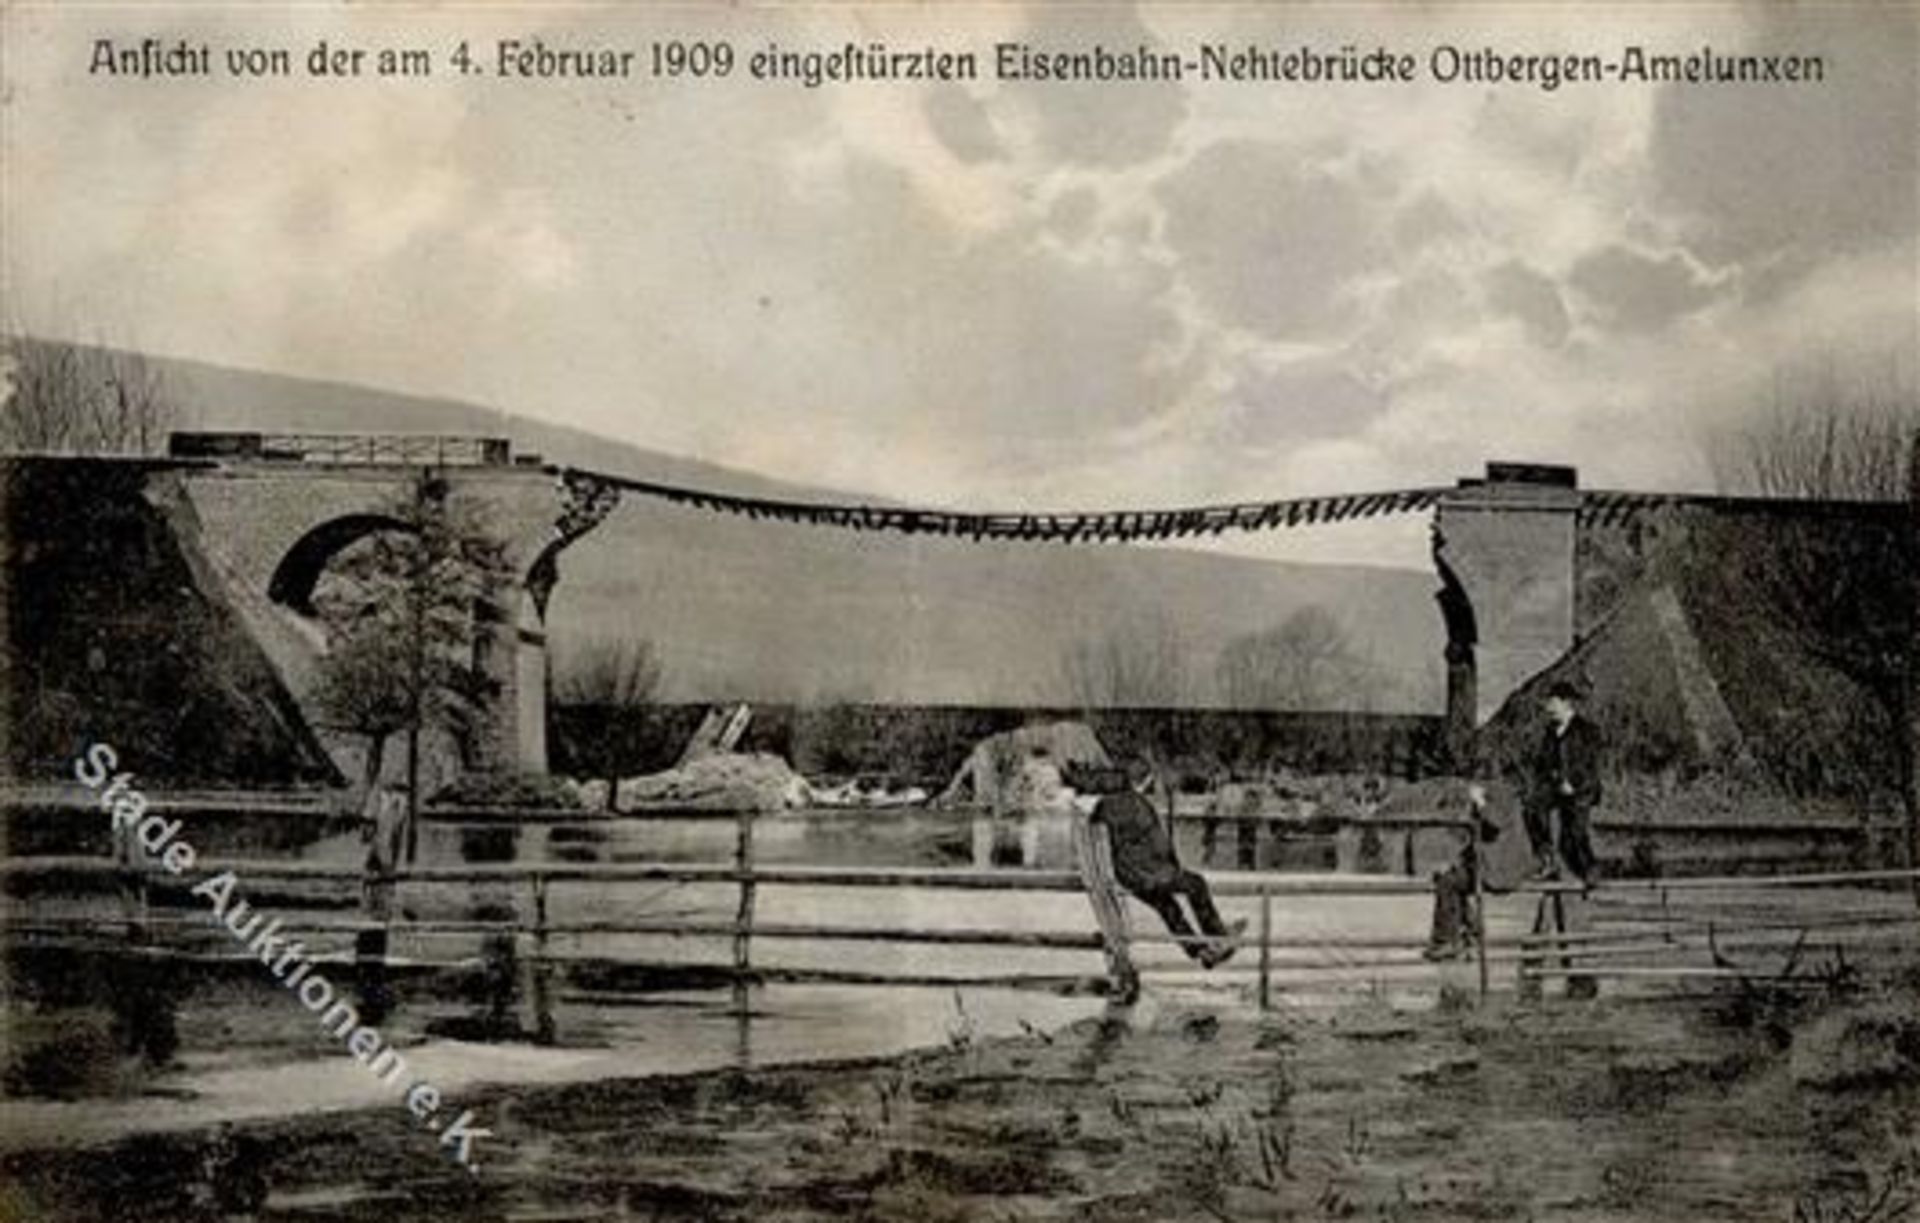 OTTBERGEN (3470) - Eingestürzte Eisenbahn-Nethebrücke OTTBERGEN-AMELUNXEN 4.2.1909 I-IIDieses Los